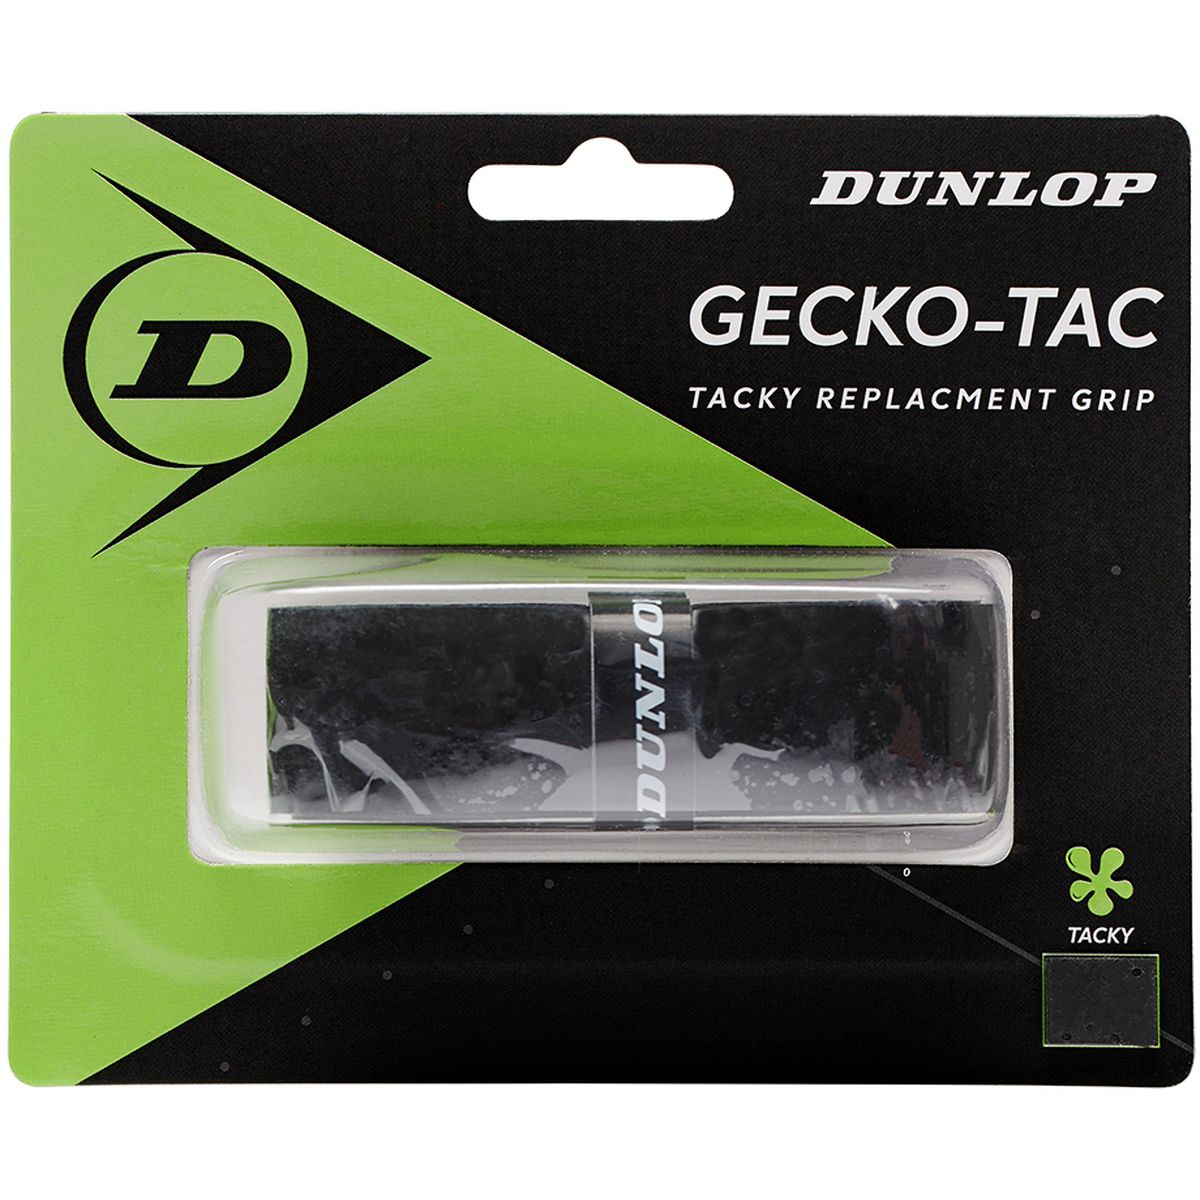 Dunlop D Tac Geckotac Replacement Grip Griffband